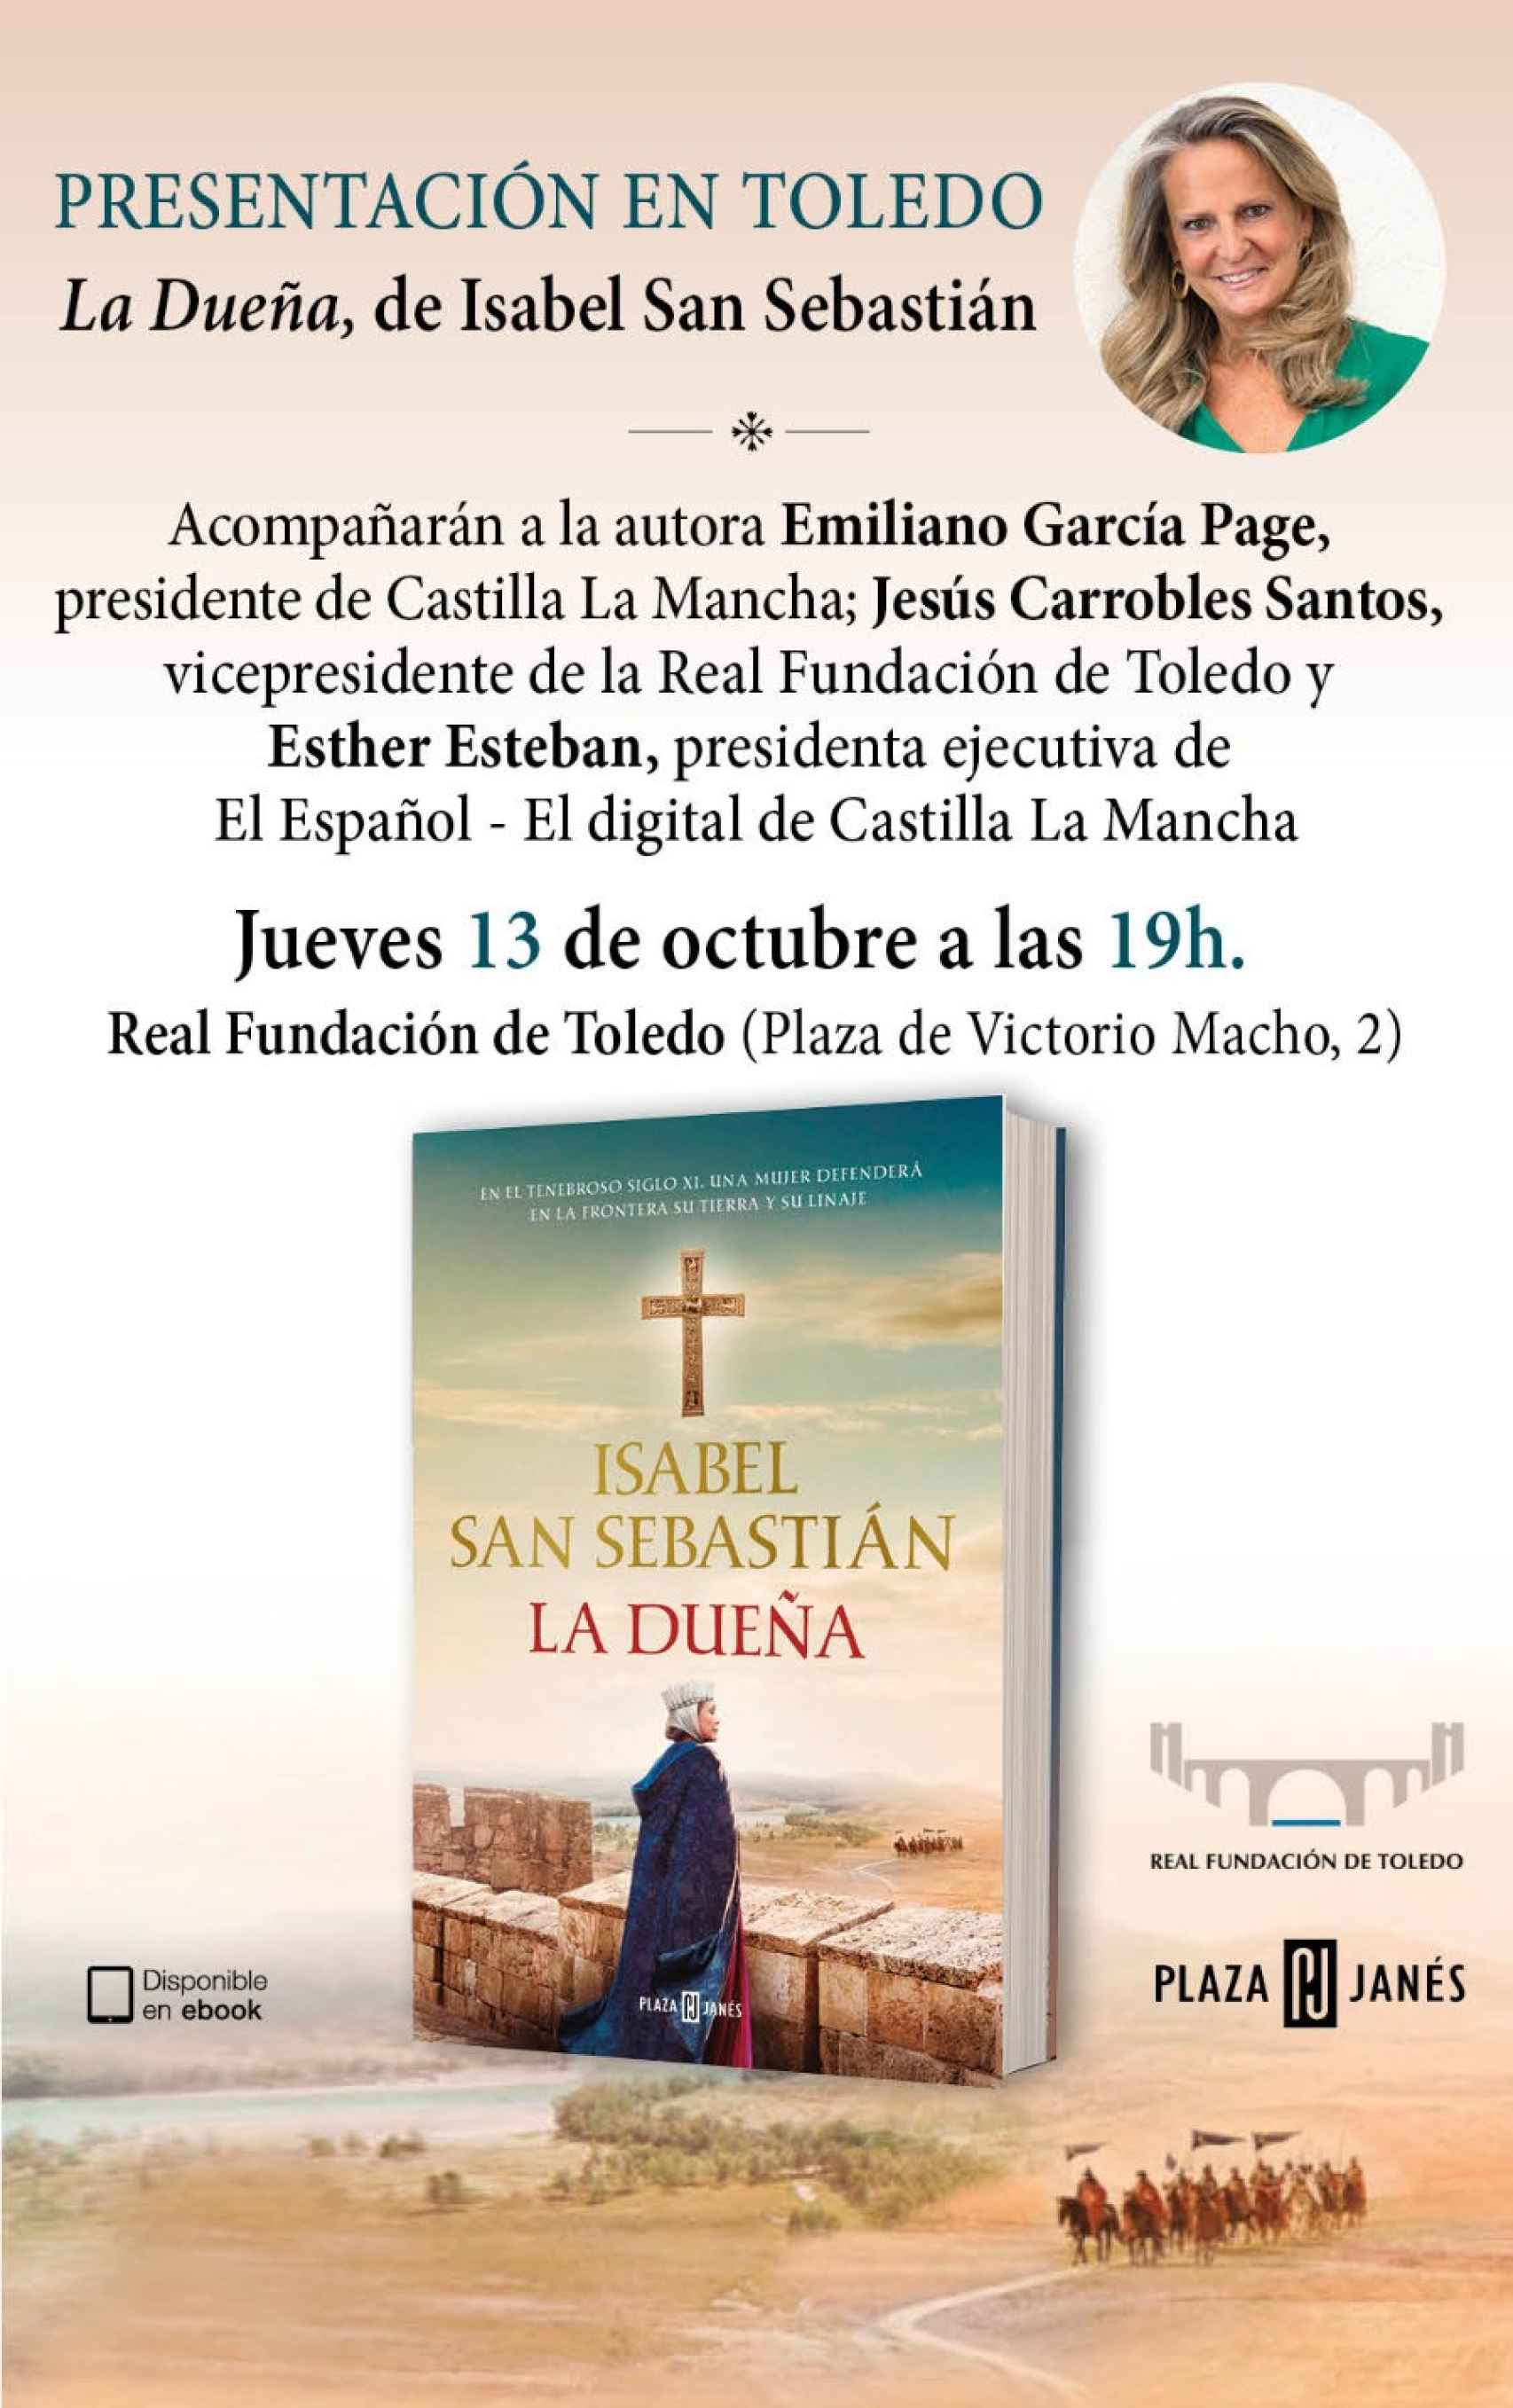 Presentación de la nueva novela de Isabel San Sebastián en Toledo.